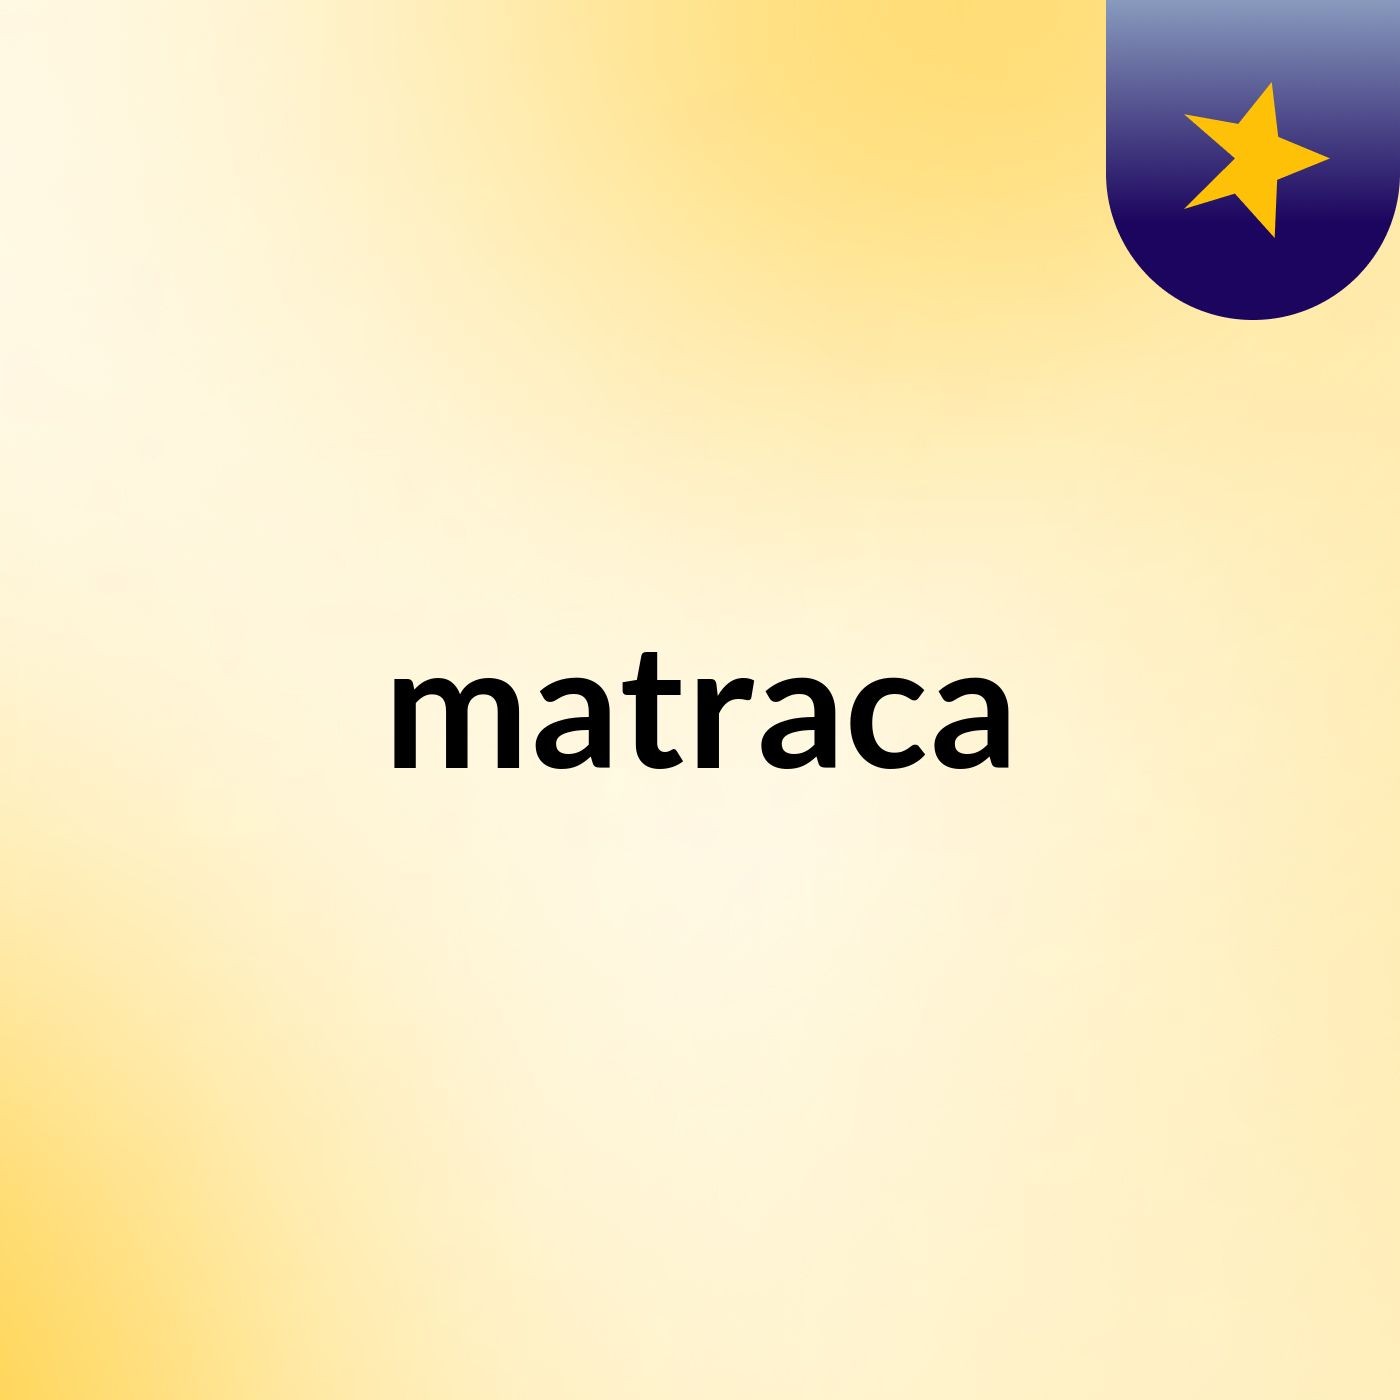 matraca